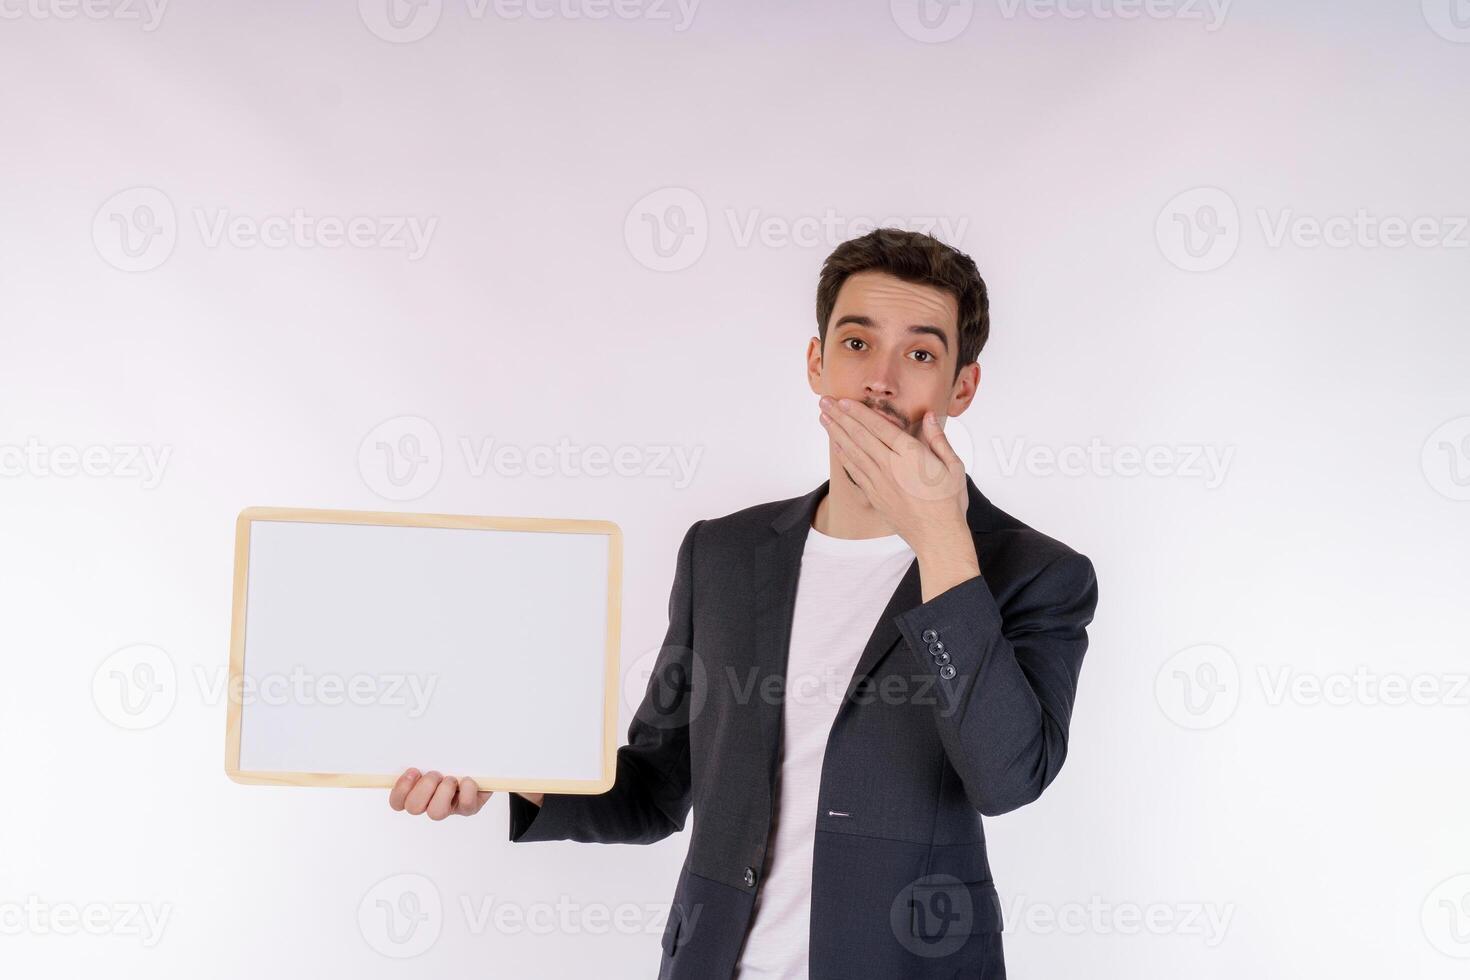 retrato de un hombre de negocios feliz que muestra un cartel en blanco sobre un fondo blanco aislado foto